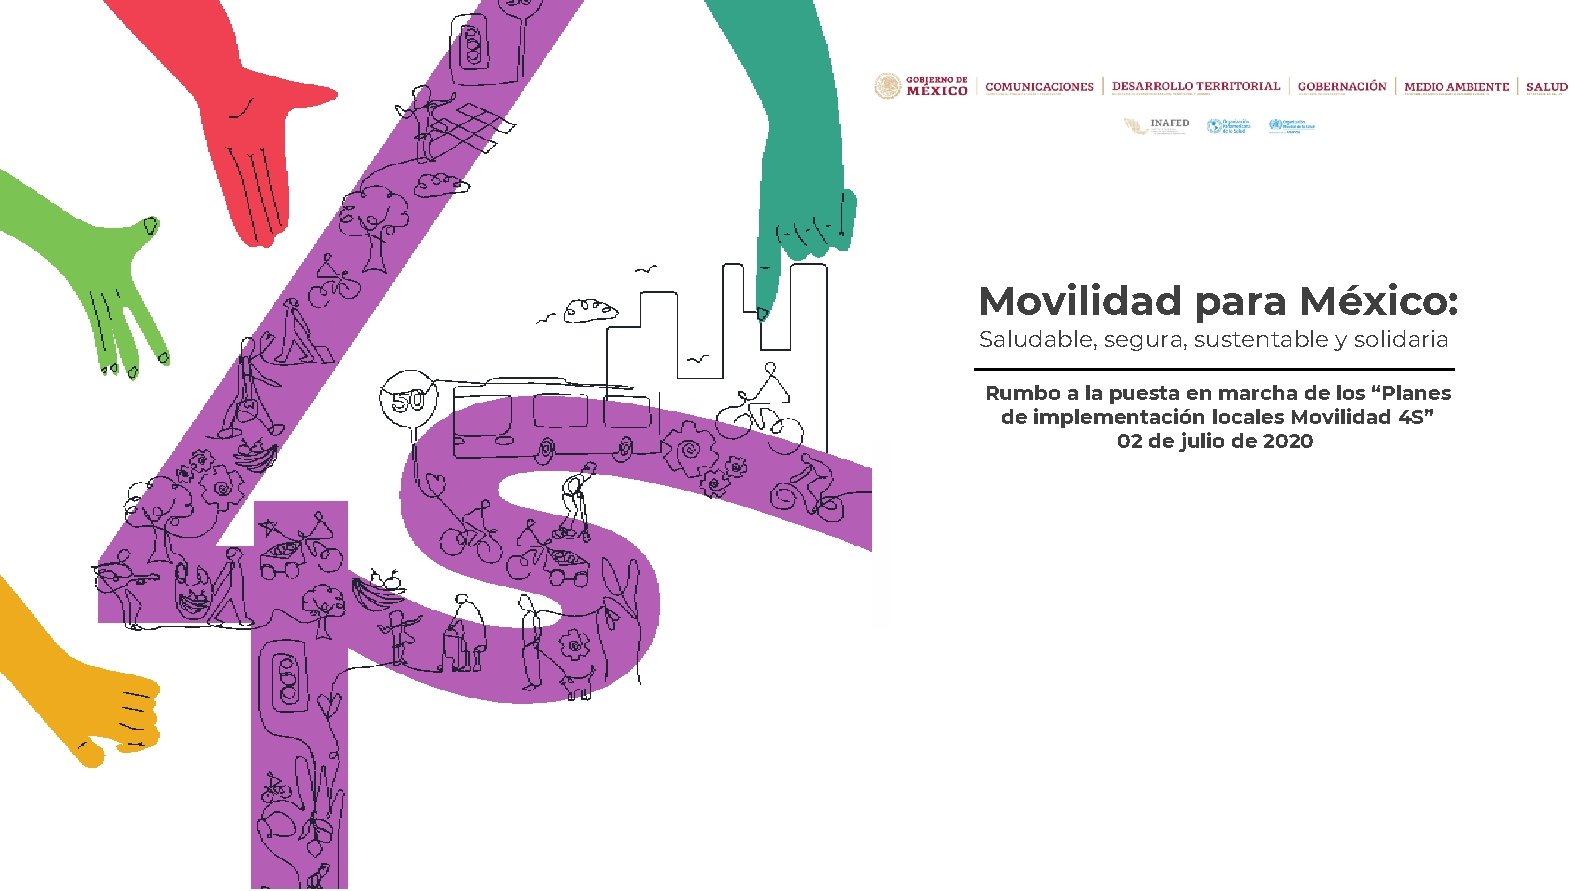 Movilidad para México: Saludable, segura, sustentable y solidaria Rumbo a la puesta en marcha